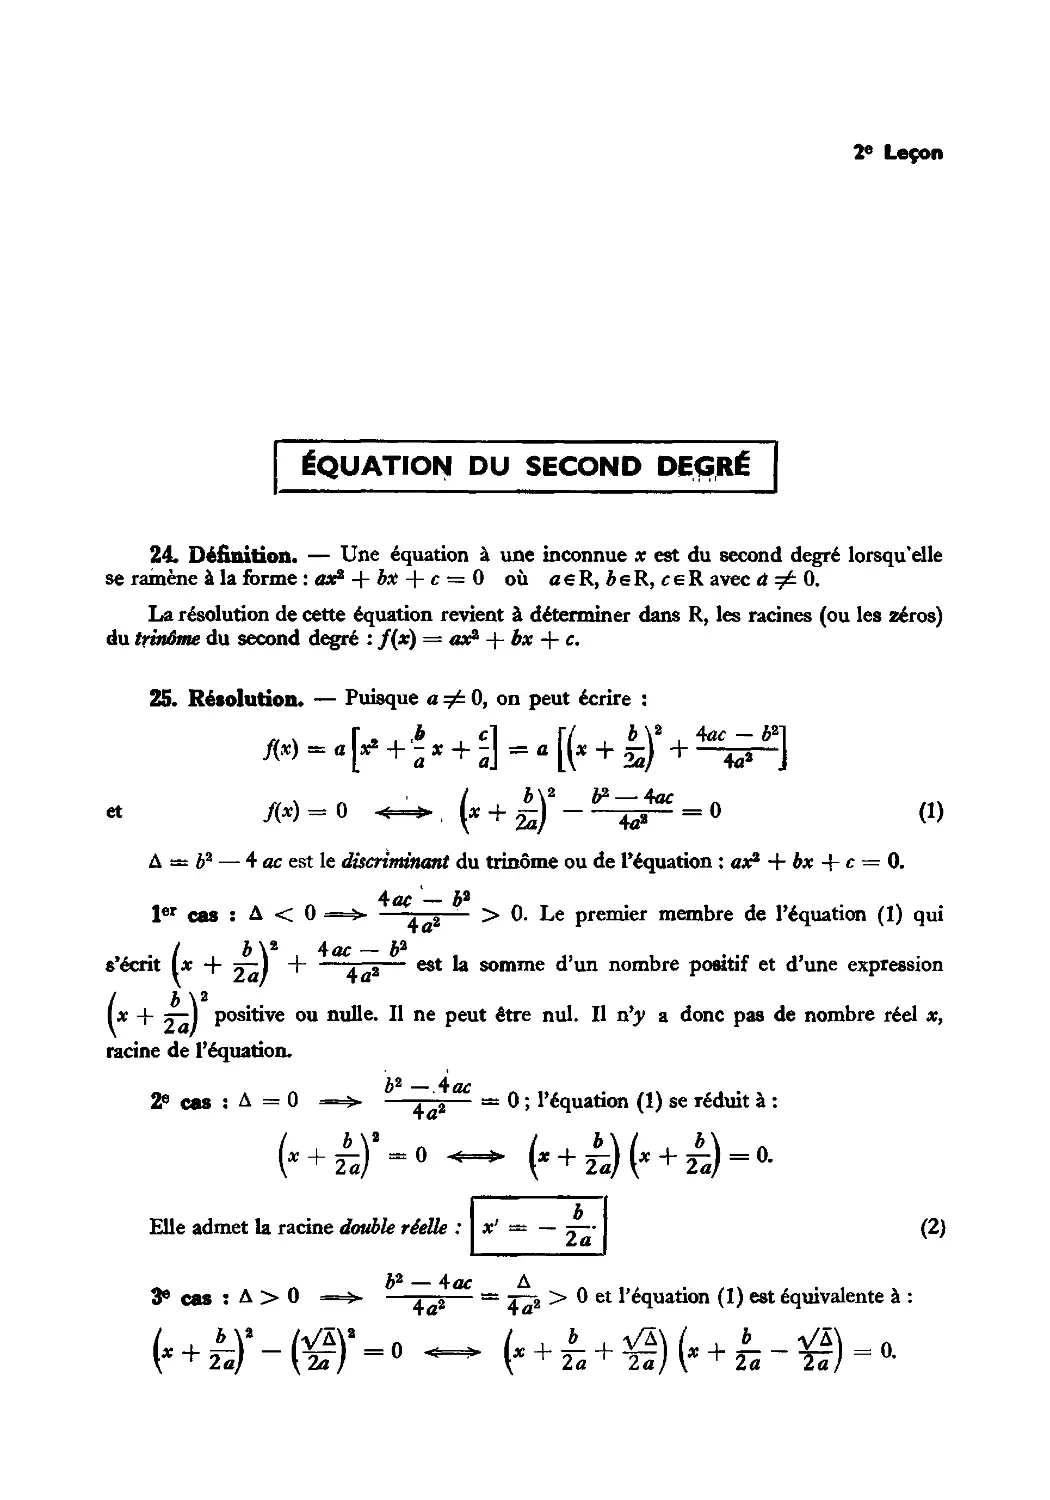 Leçon 2 — Équation du second degré
25. Résolution